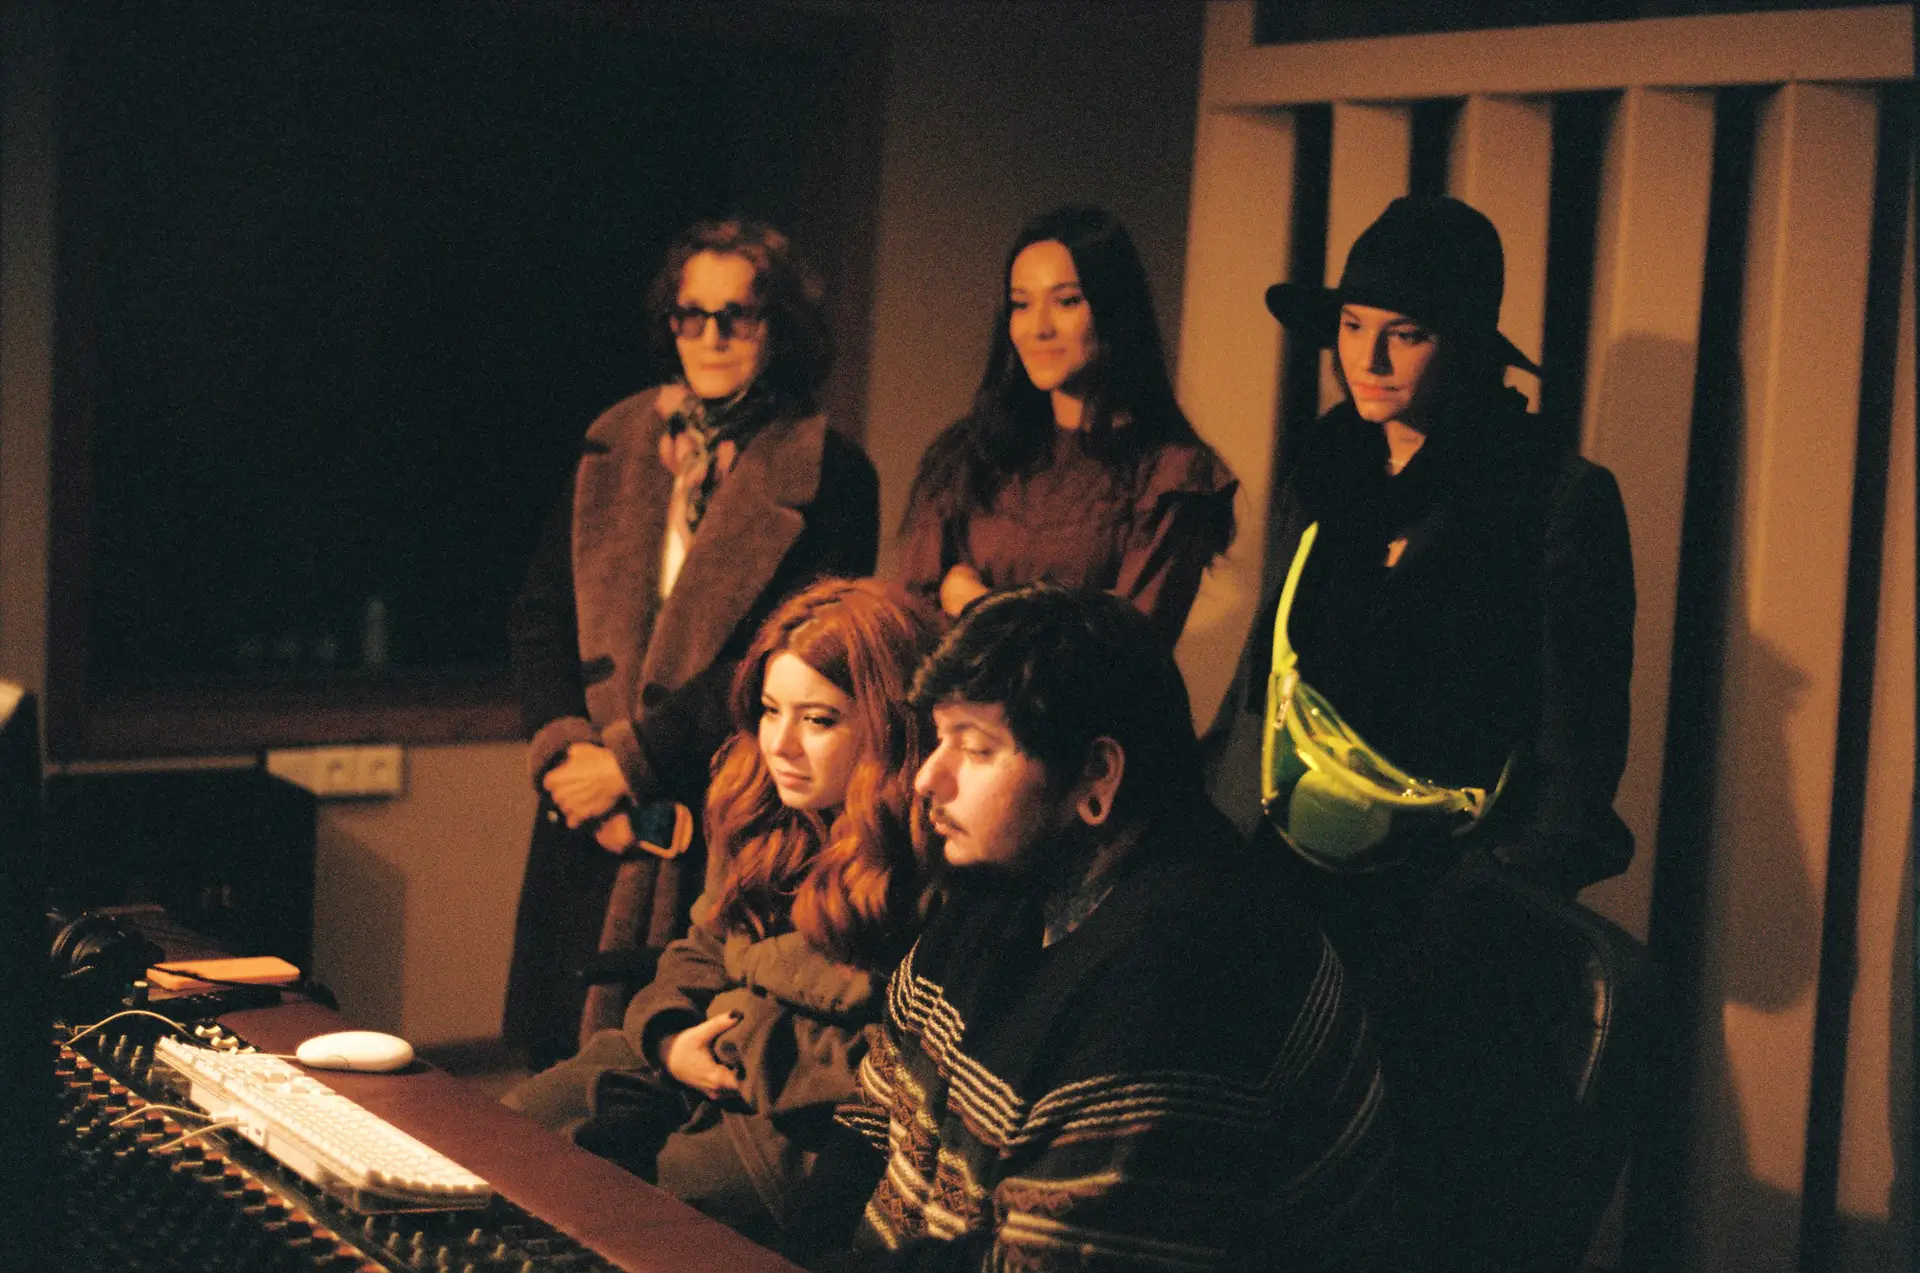 Agir em estúdio nas gravações do álbum "Cantar Carneiros" com as convidadas Bárbara Tinoco, Isabel Ruth, Tainá e Milhanas